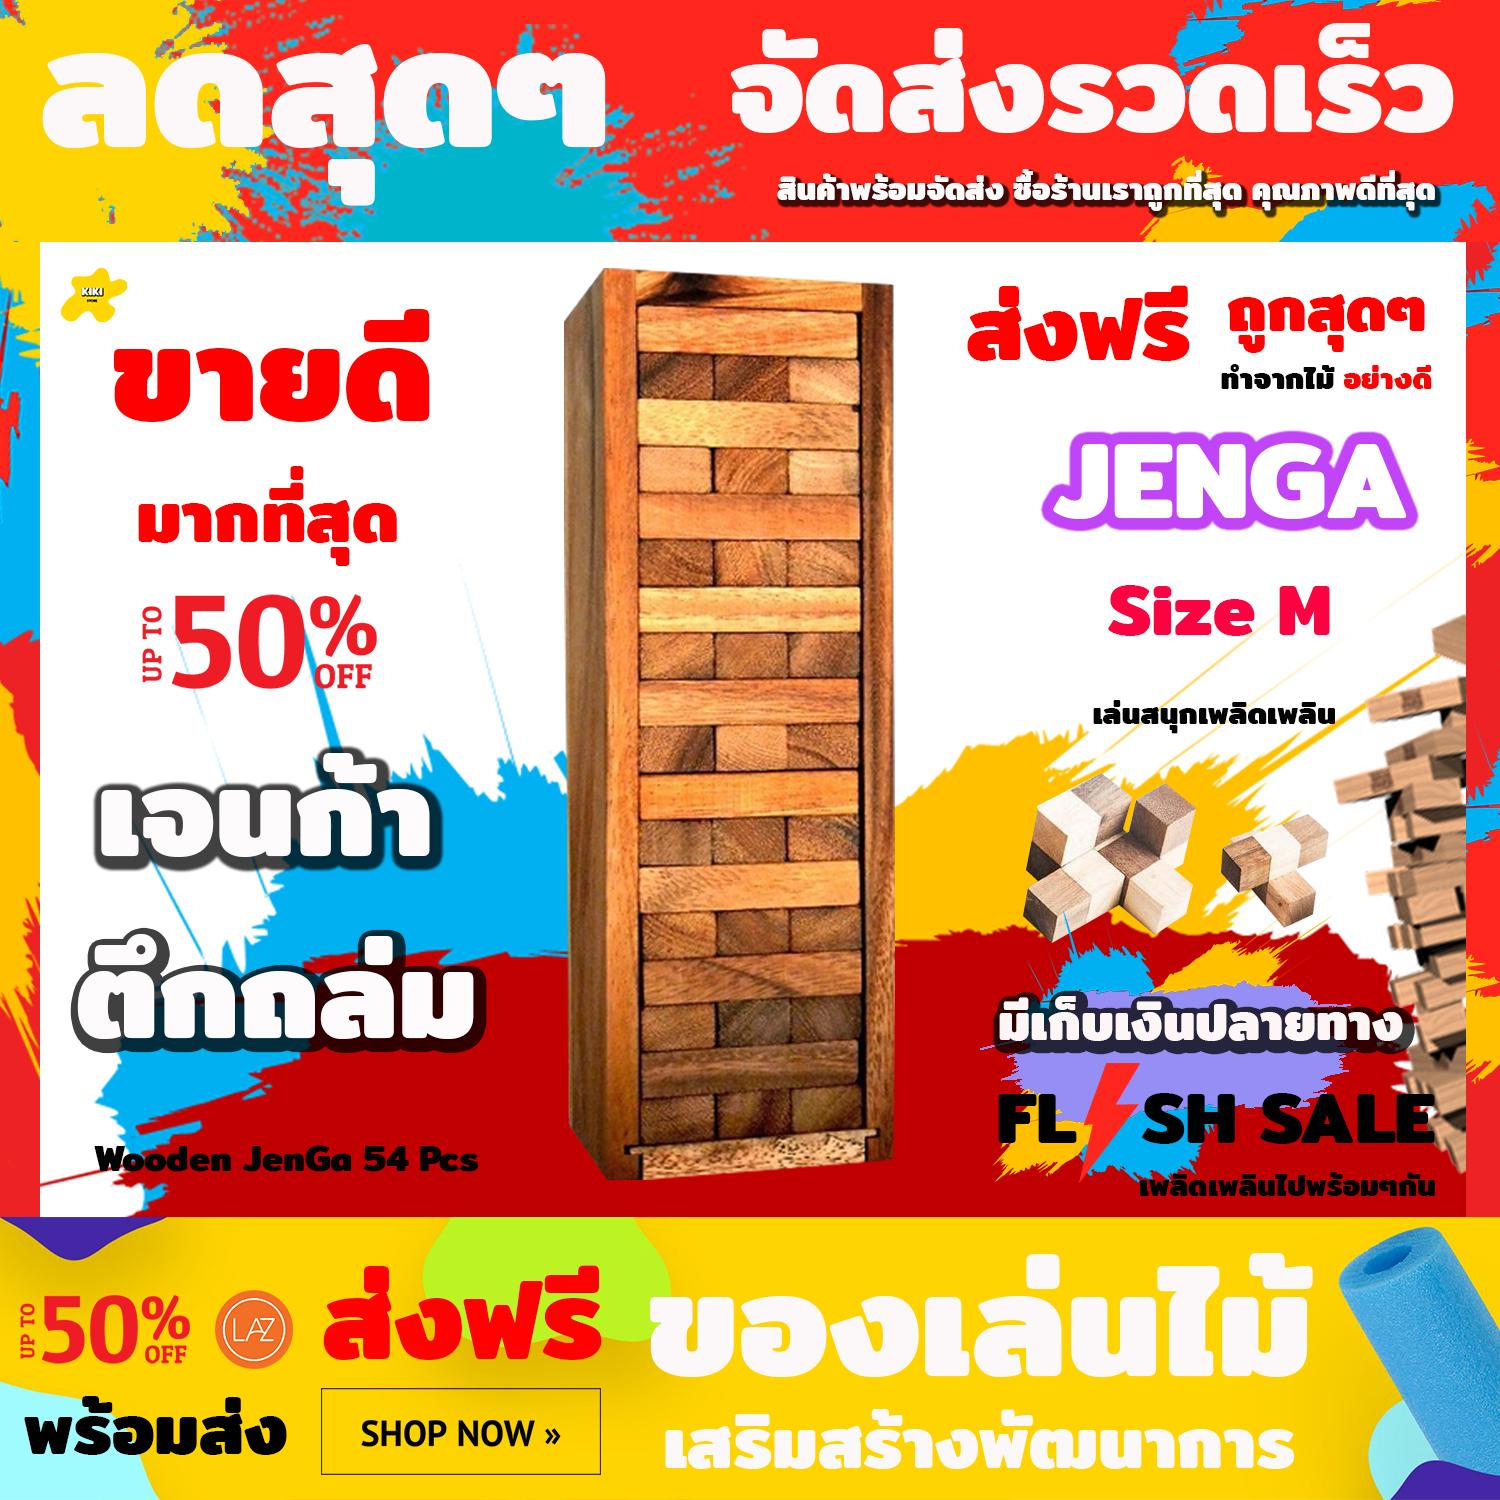 ชุดของเล่นไม้เจนก้า (Jenga) ตึกถล่ม สนุกเพลิดเพลิน Number Block (Size M) Wooden JenGa Game (เกมส์คอนโดถล่ม) 54 Pcs